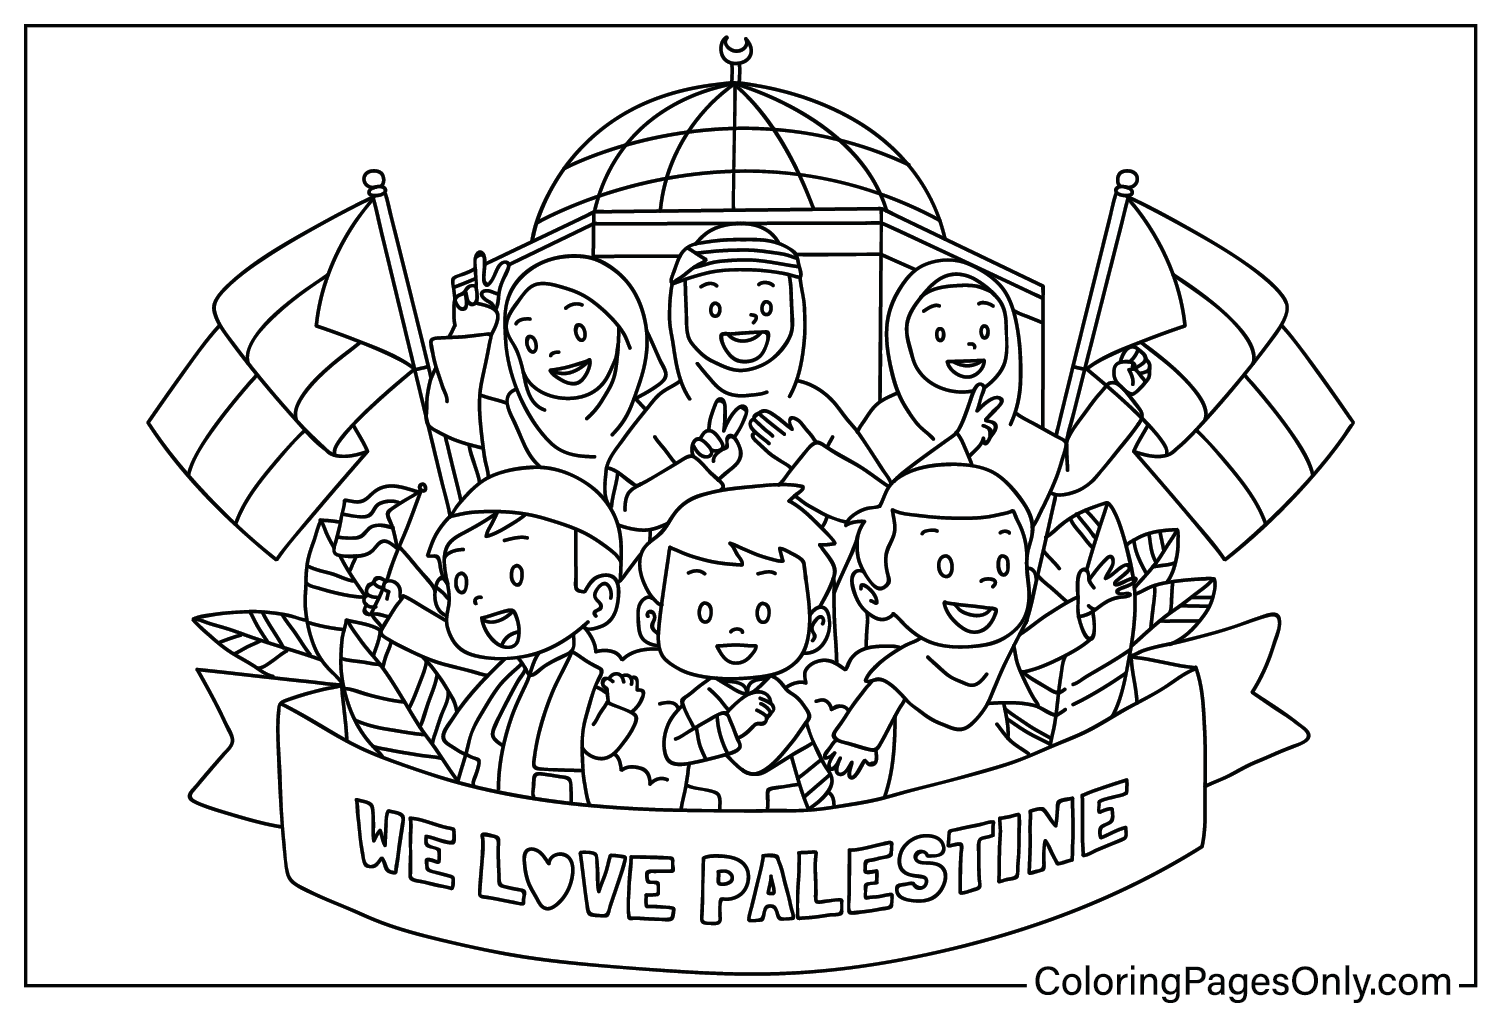 Coloriage Palestine gratuit